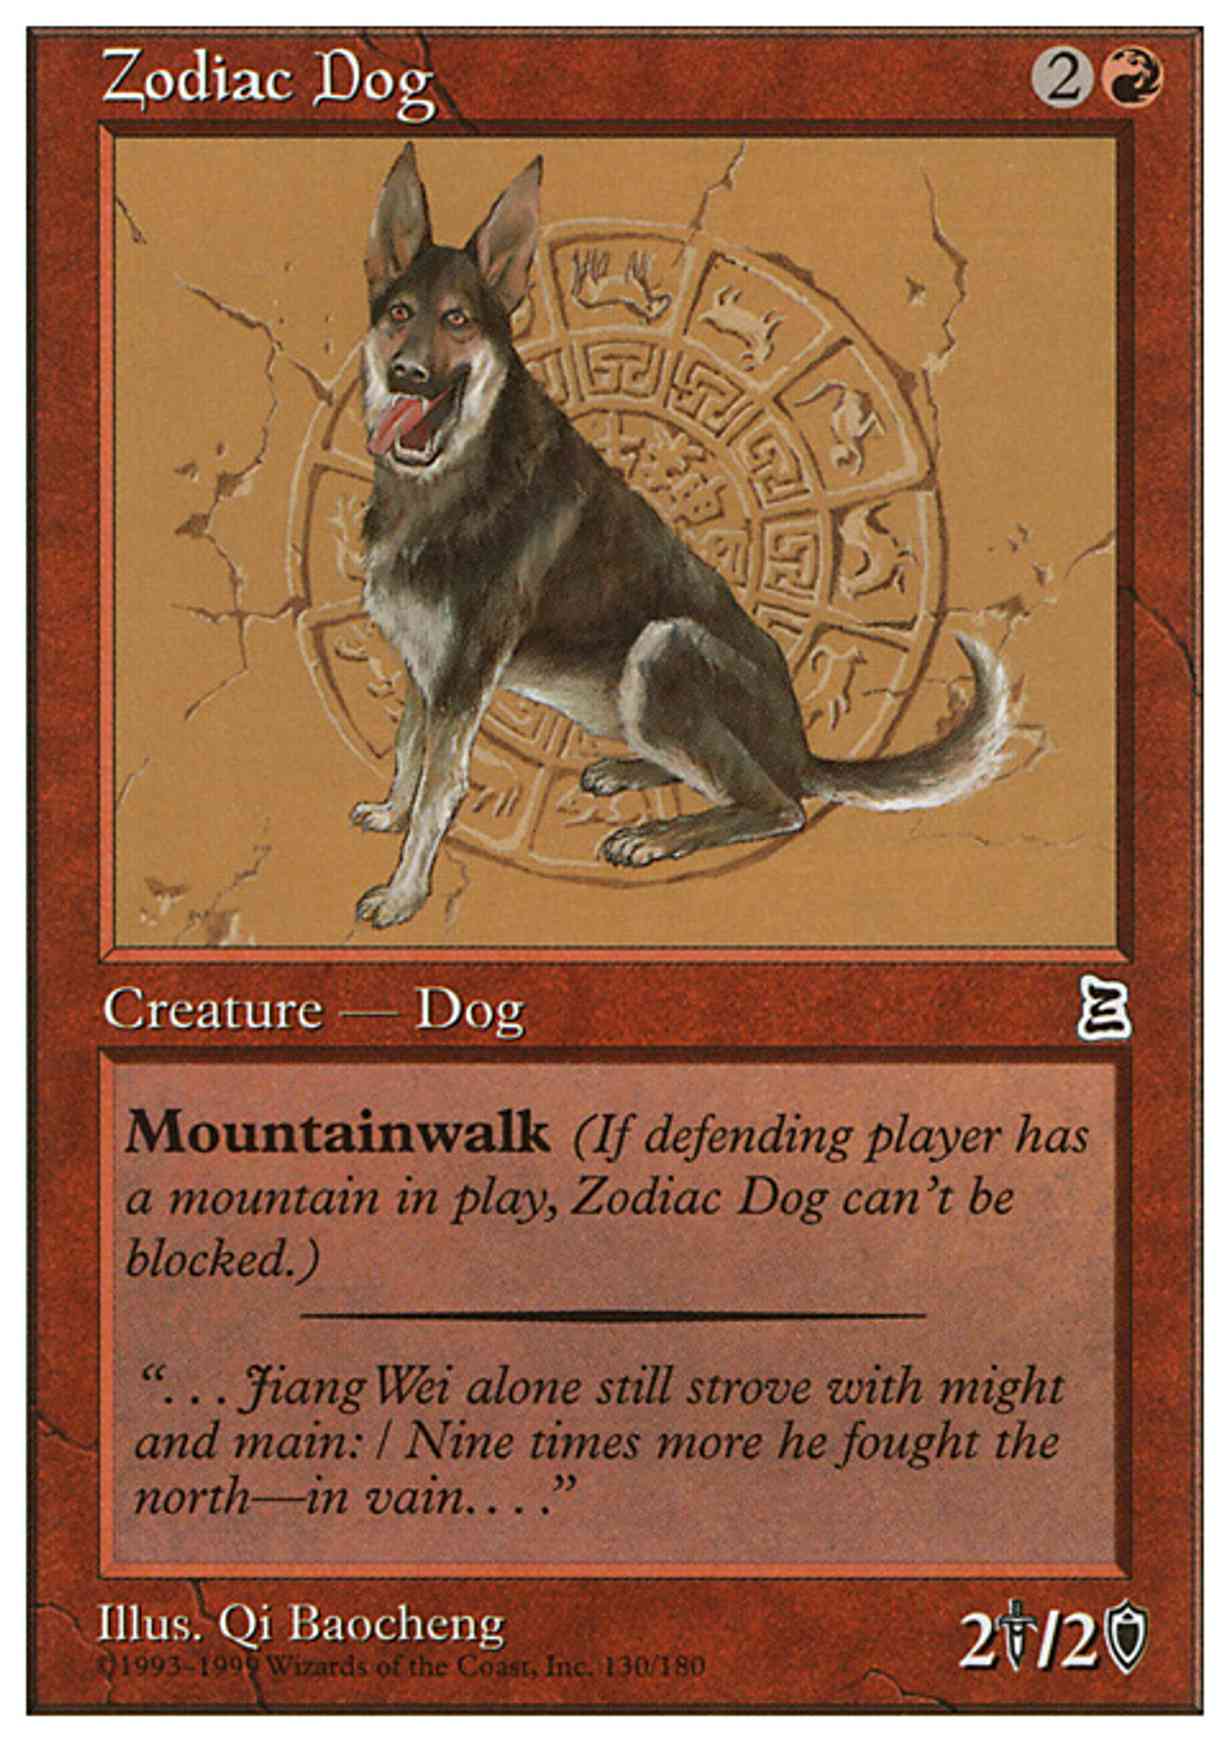 Zodiac Dog magic card front